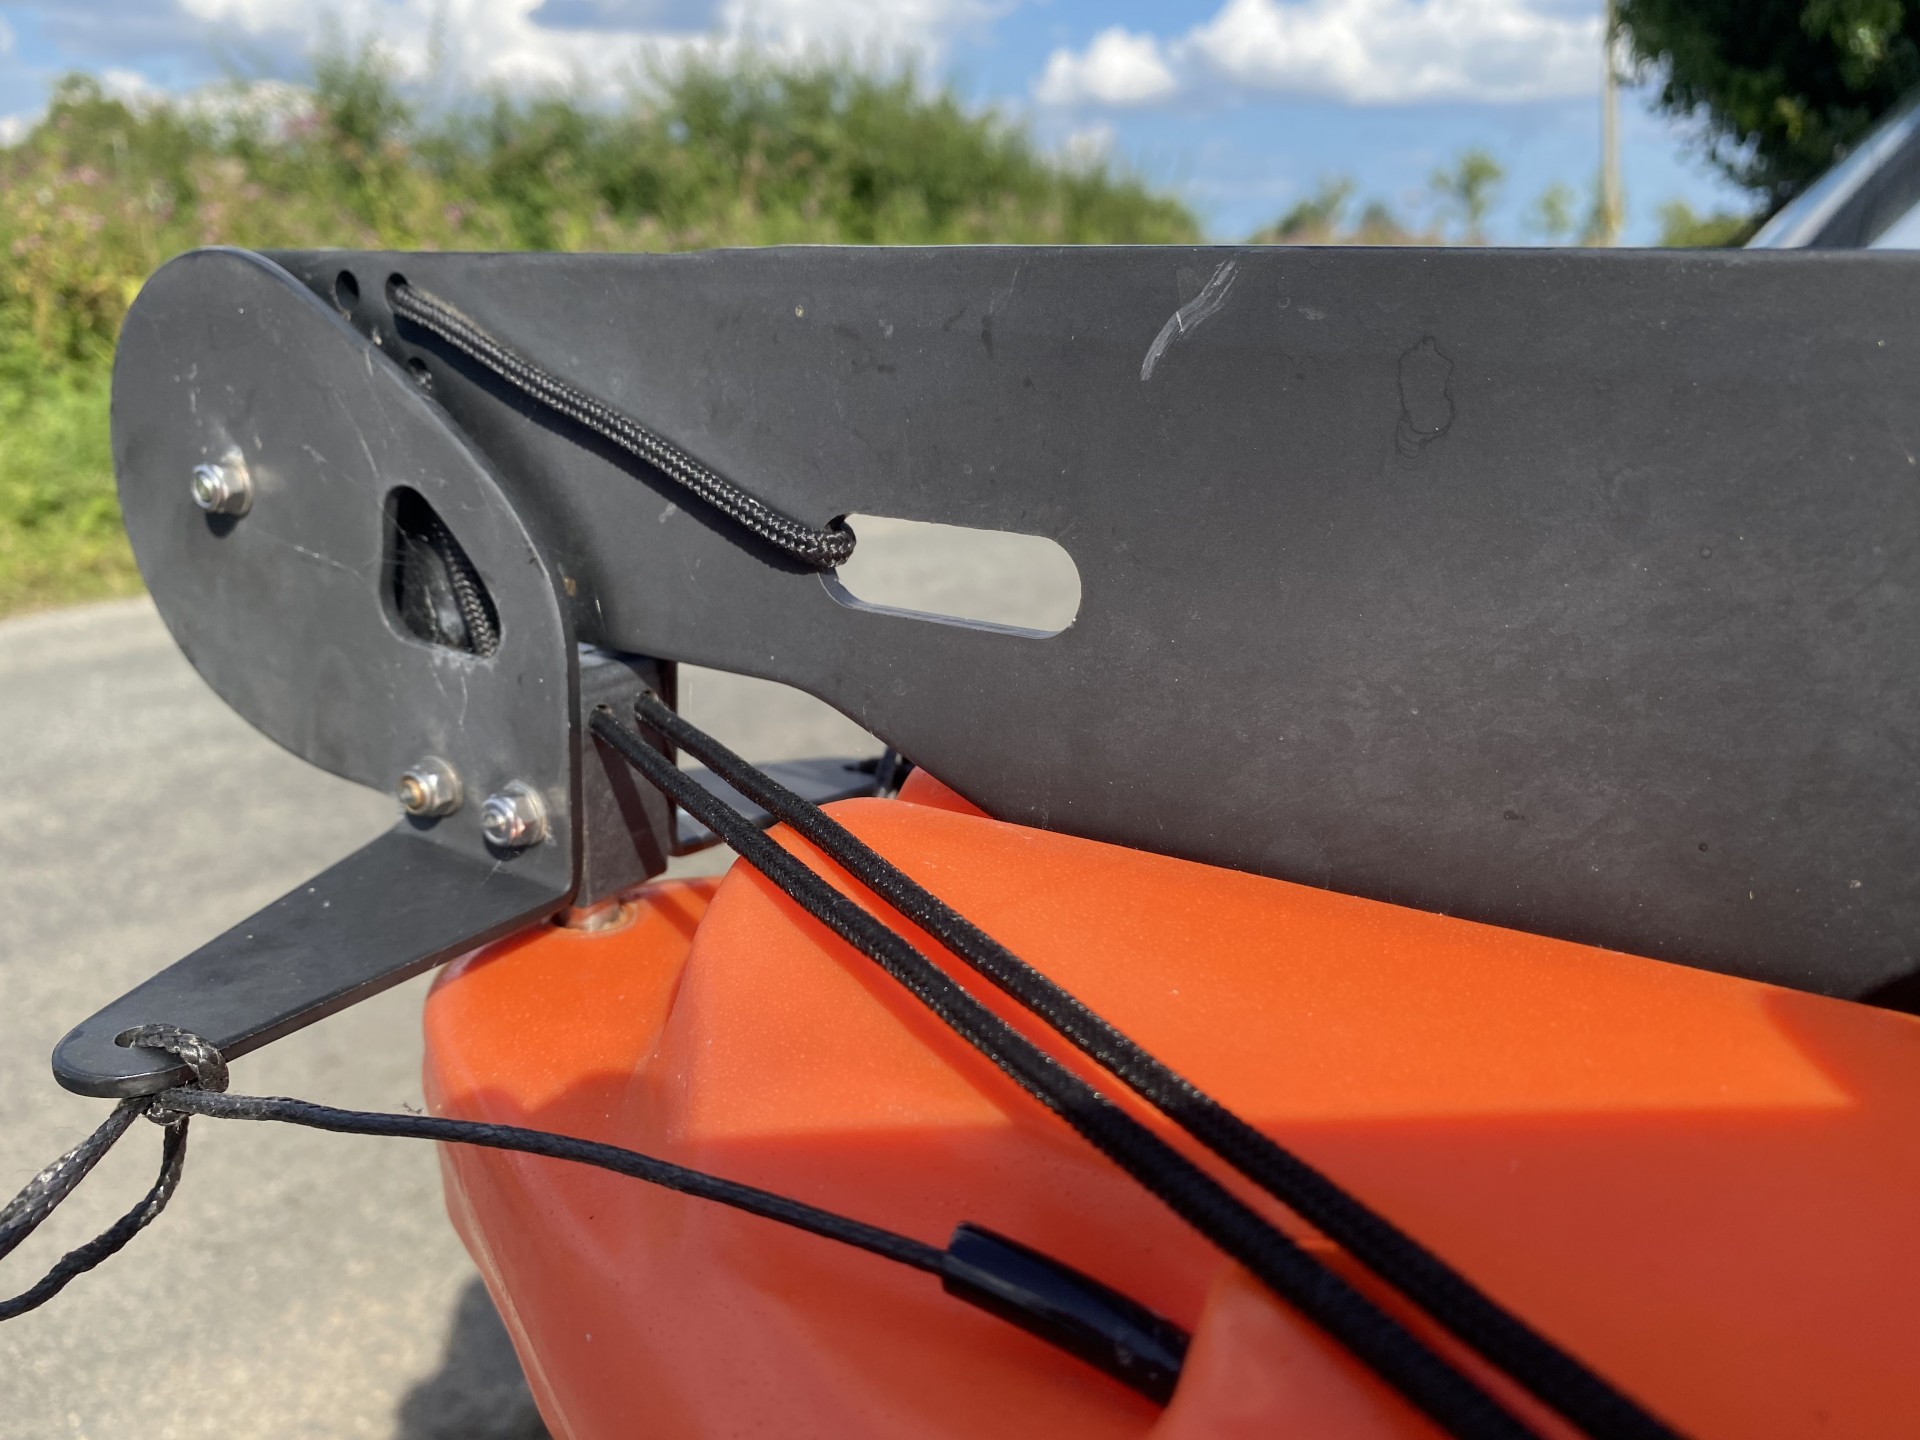 Sit-on-top kayak rudder close up